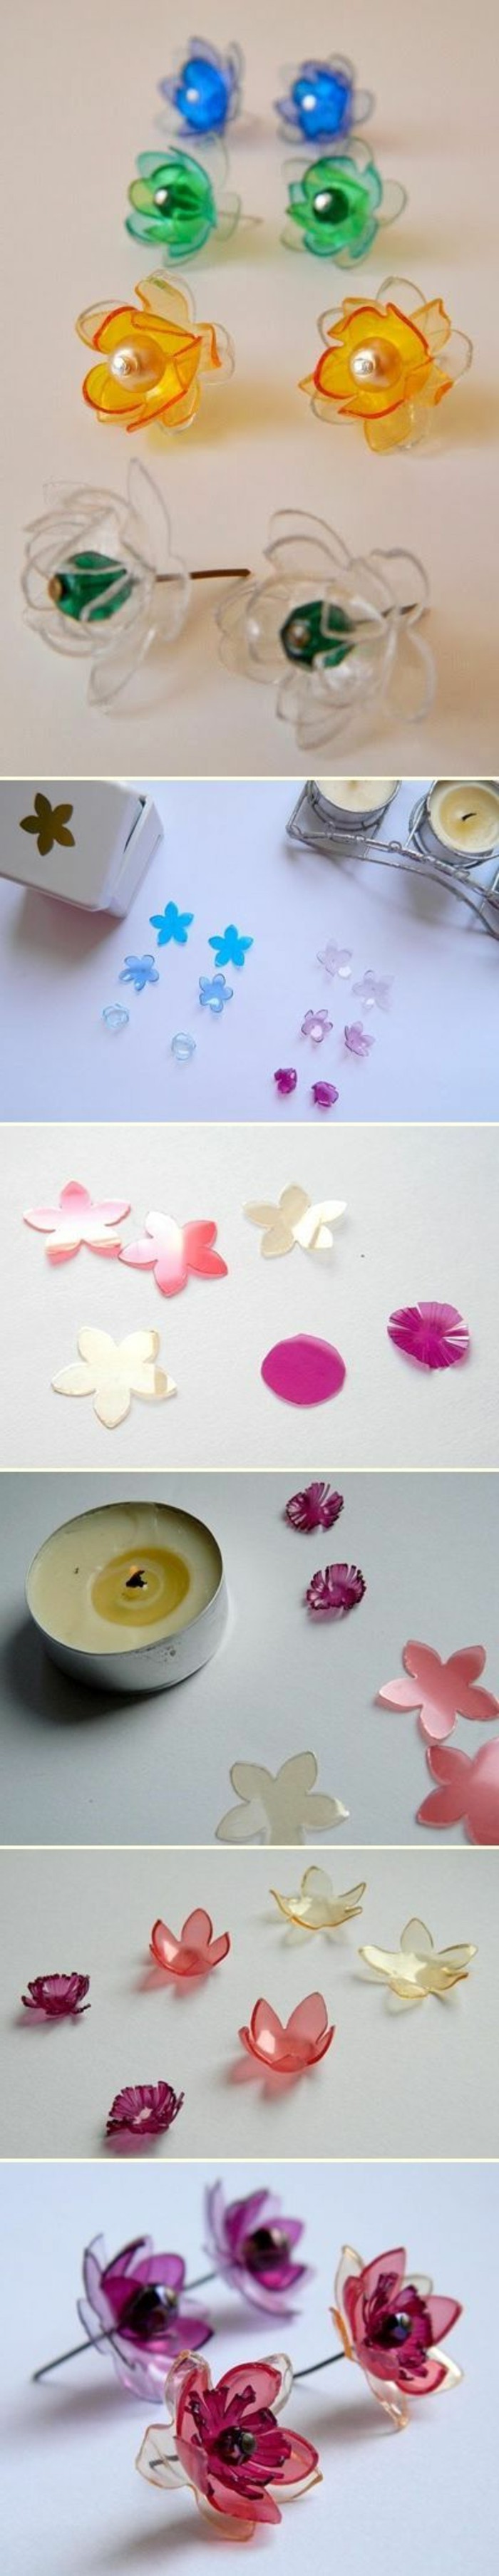 boucles-d-oreilles-en-plastique-de-couleurs-diverses-recyclage-bouteille-plastique-pour-creer-des-bijoux